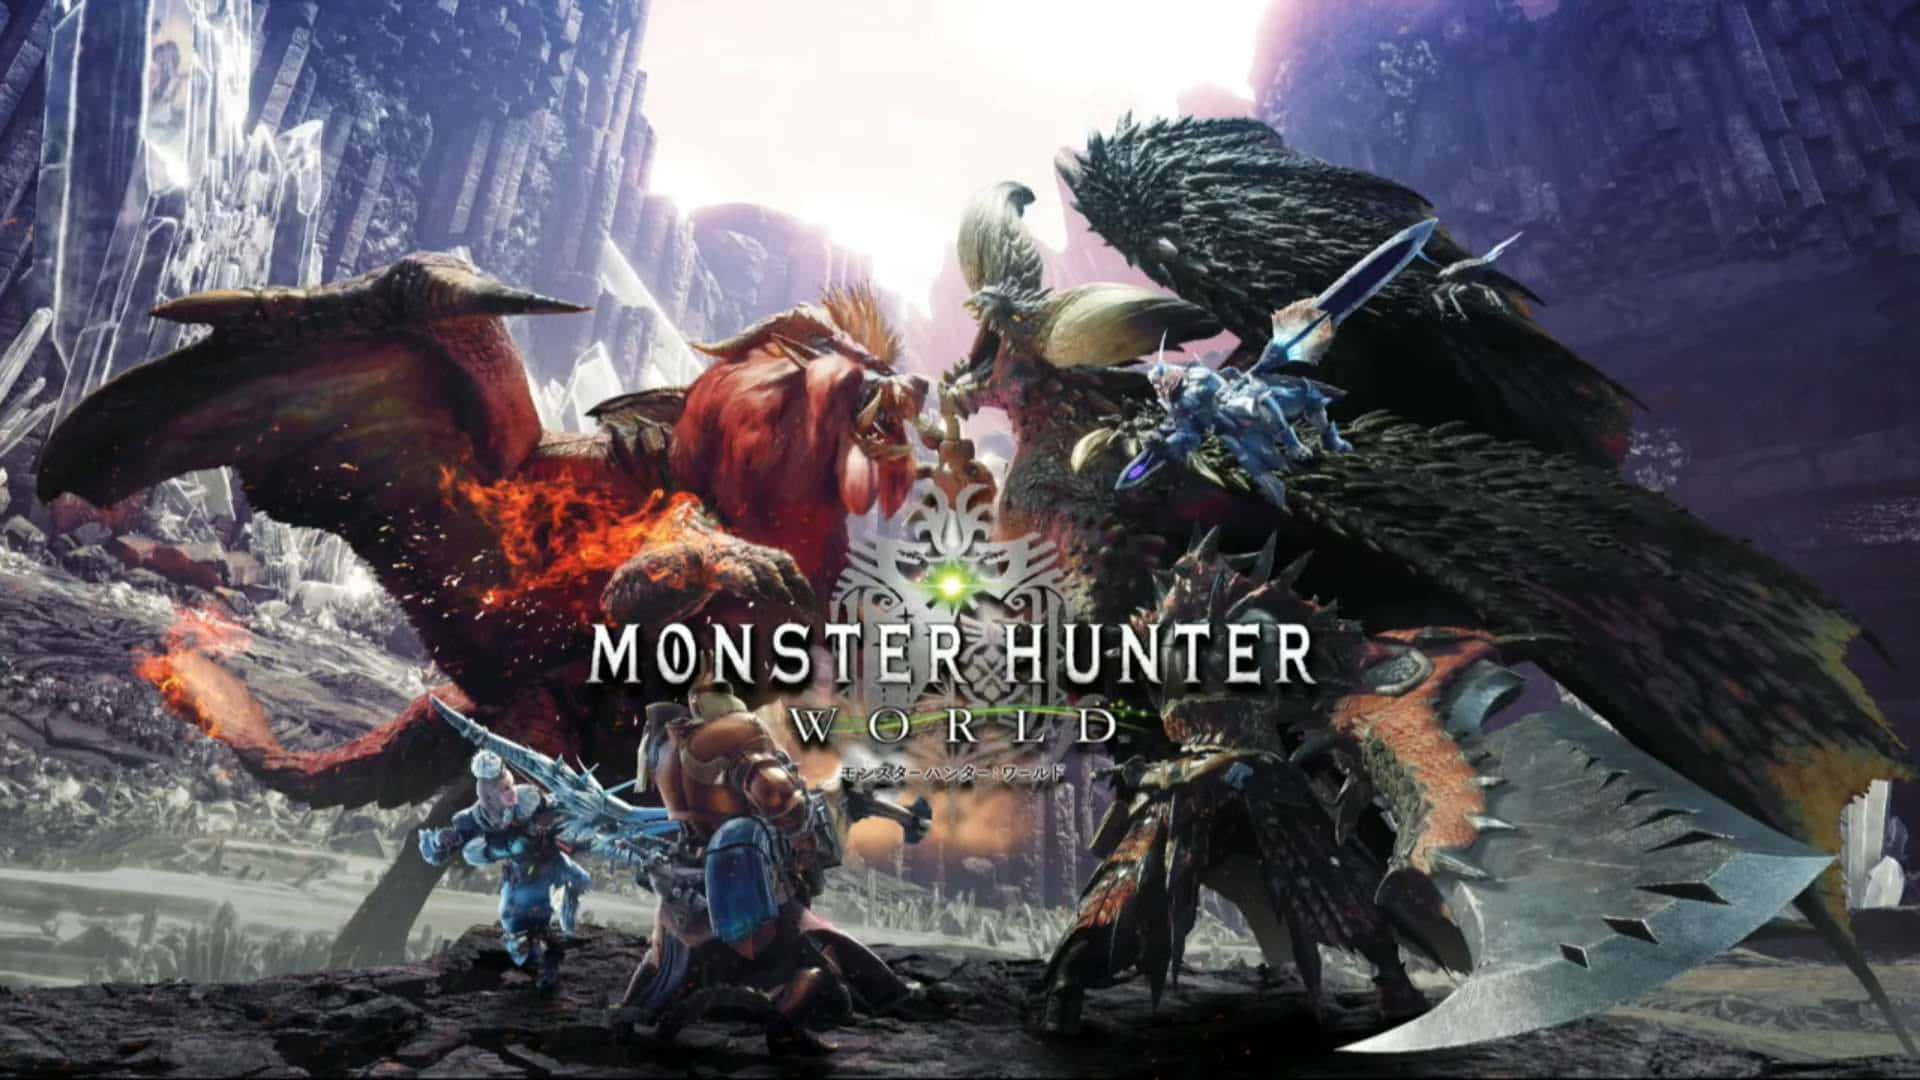 Enter the Wild World of Monster Hunter 3 Wallpaper